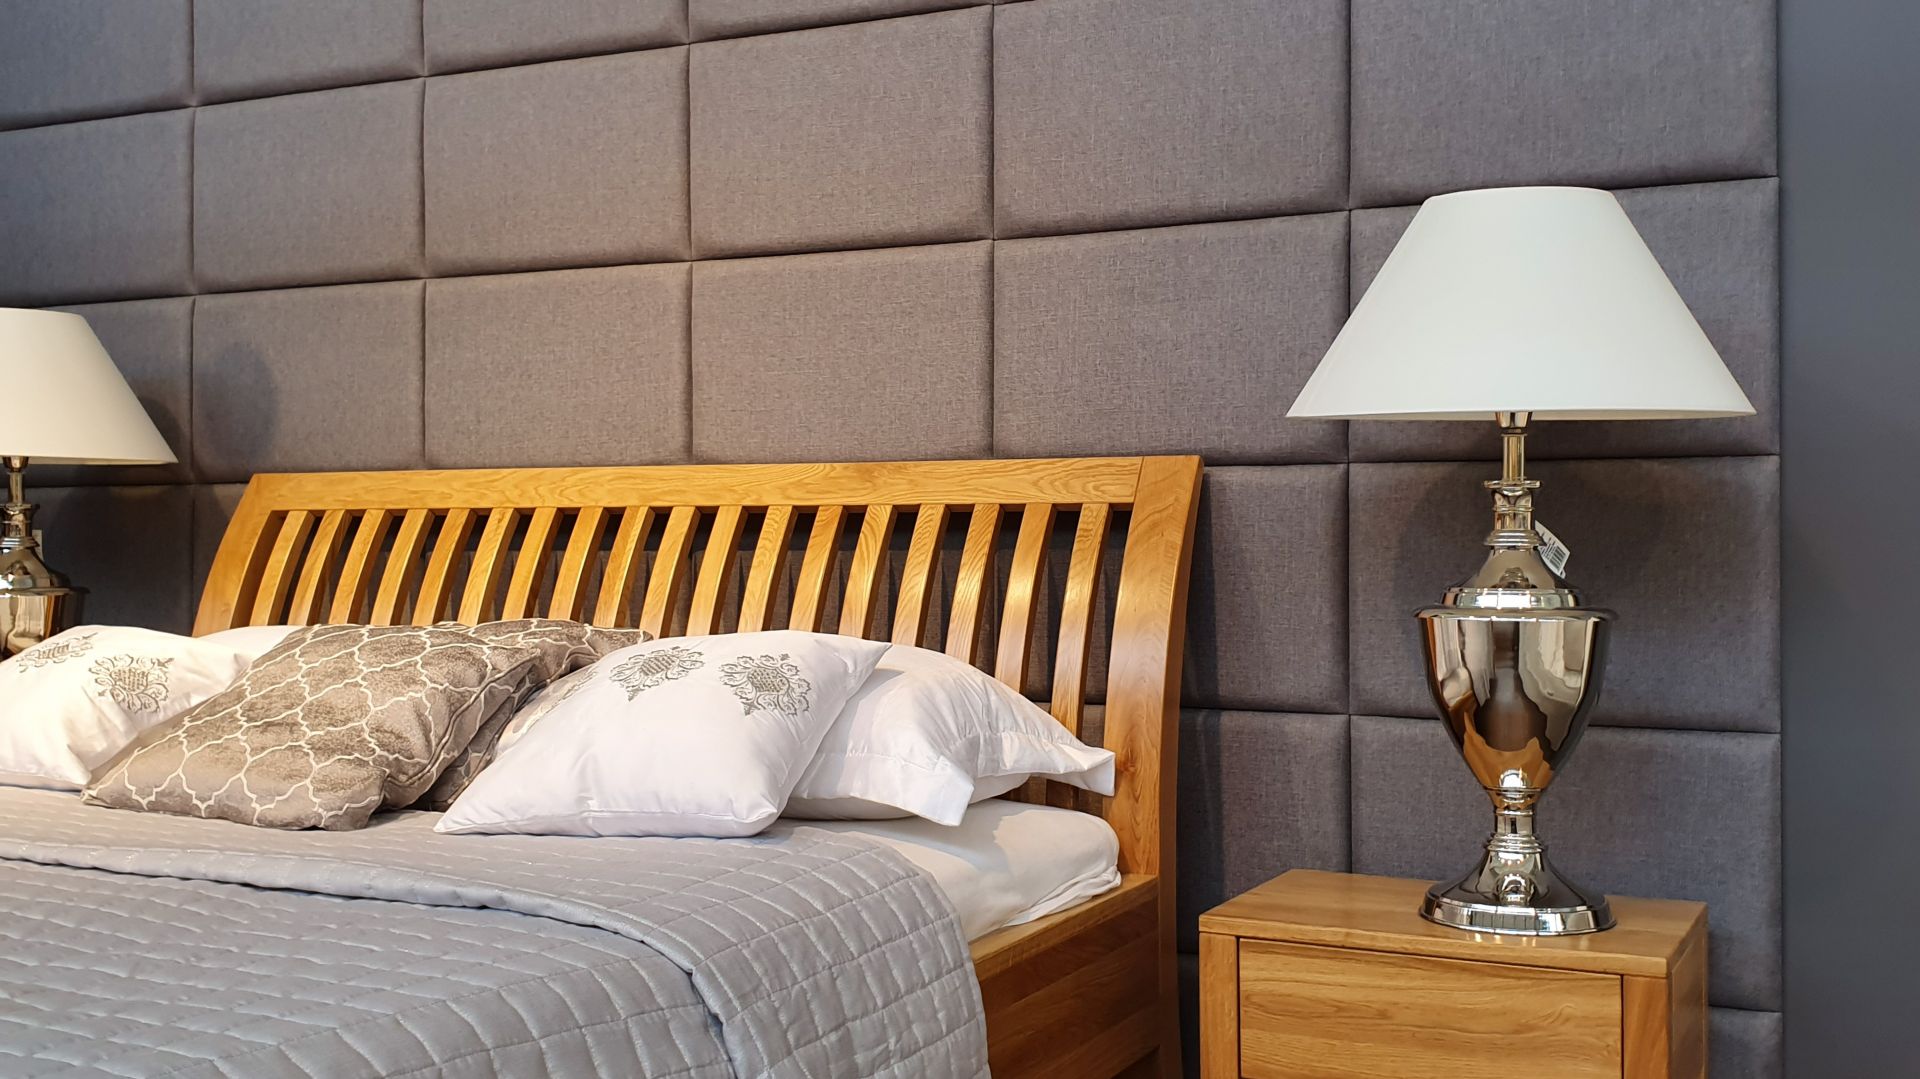 Nowoczesna sypialnia - jak stworzyć przestrzeń do relaksu